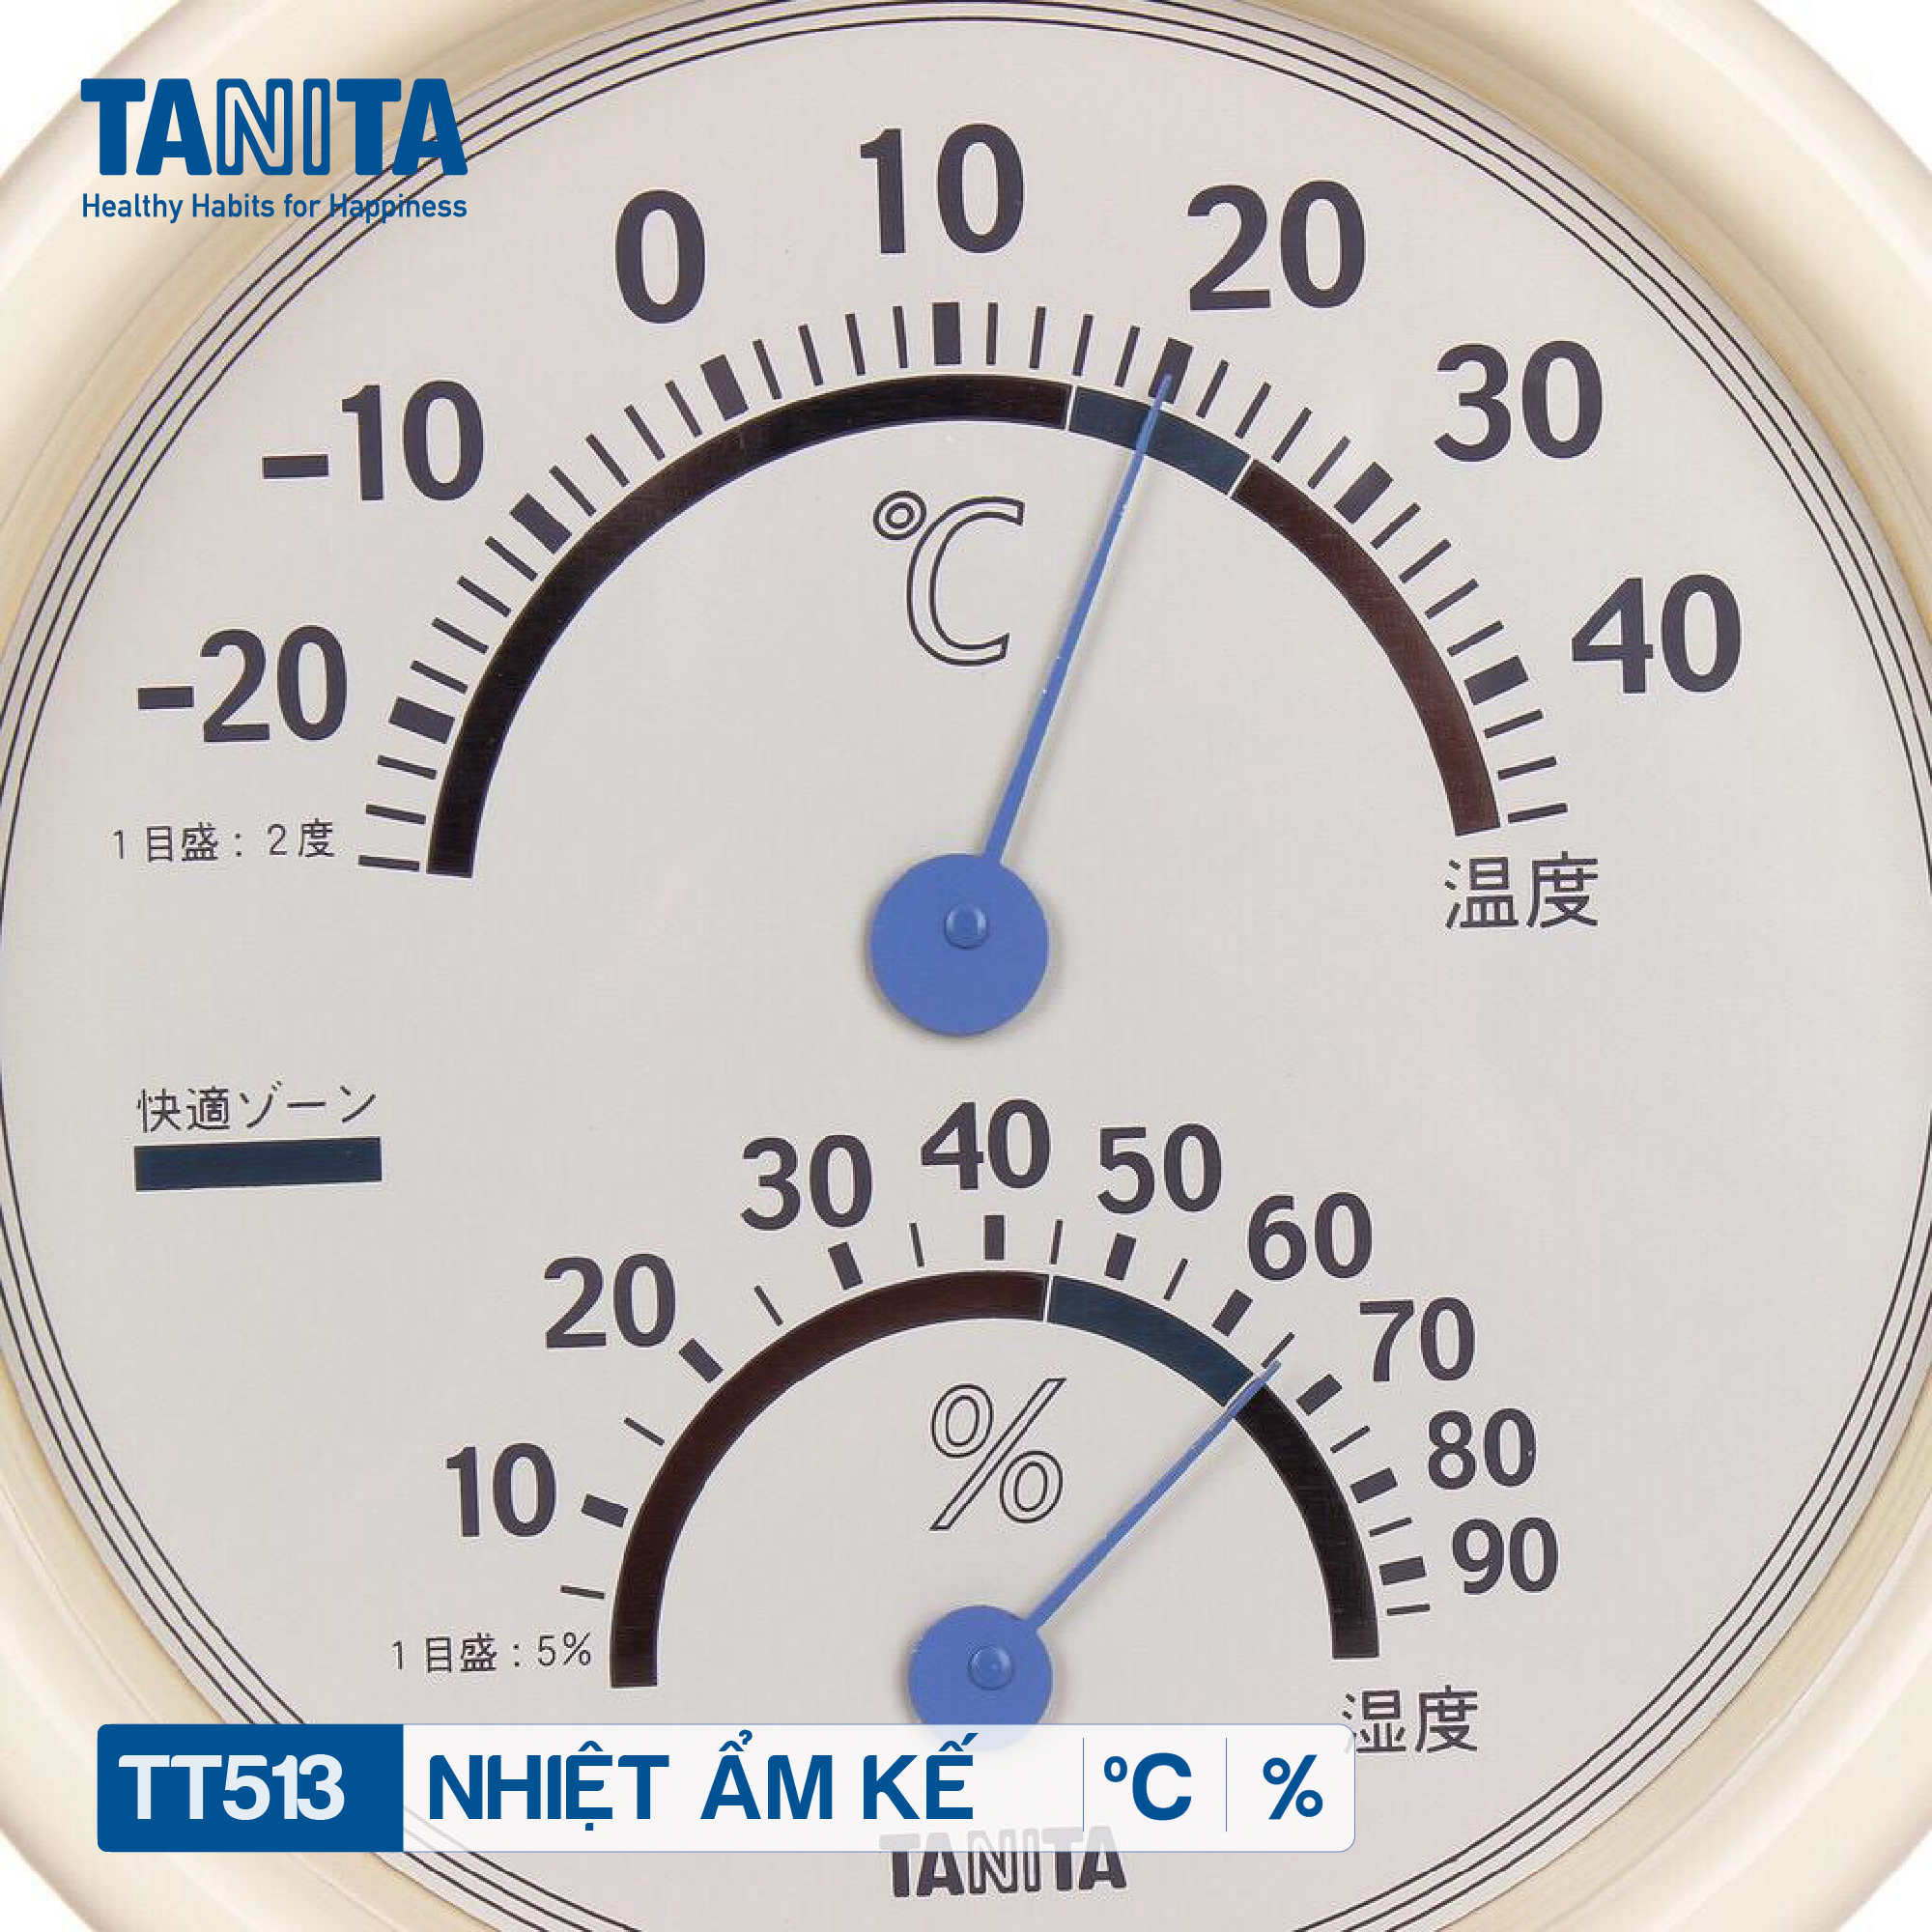 Nhiệt Ẩm Kế Tanita TT-513 đo nhiệt độ phòng, độ ẩm